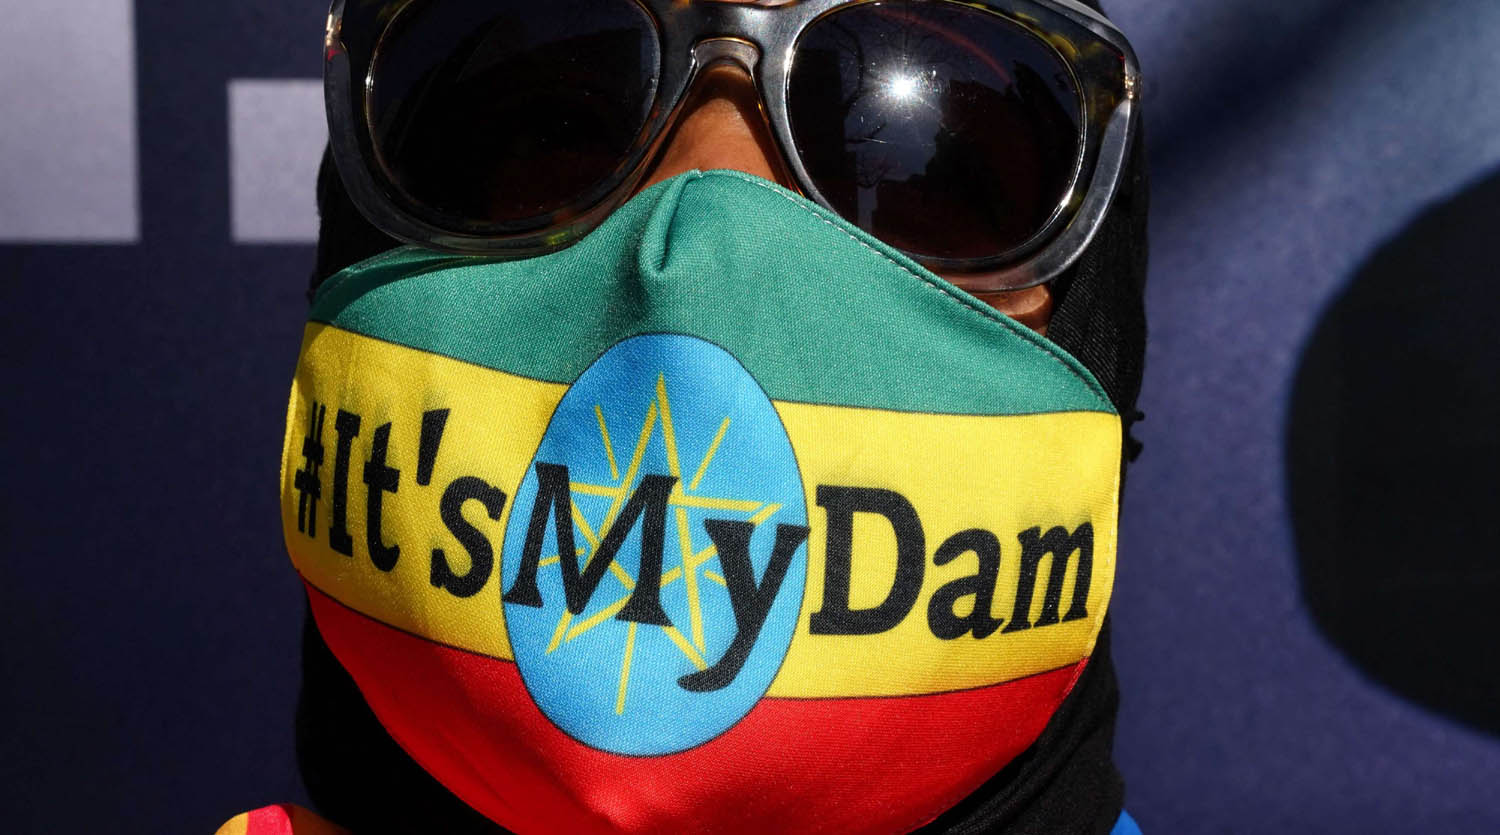 متظاهر اثيوبي في نيويورك يضع شعار "السد لي" تأييدا لموقف حكومته من قضية سد النهضة